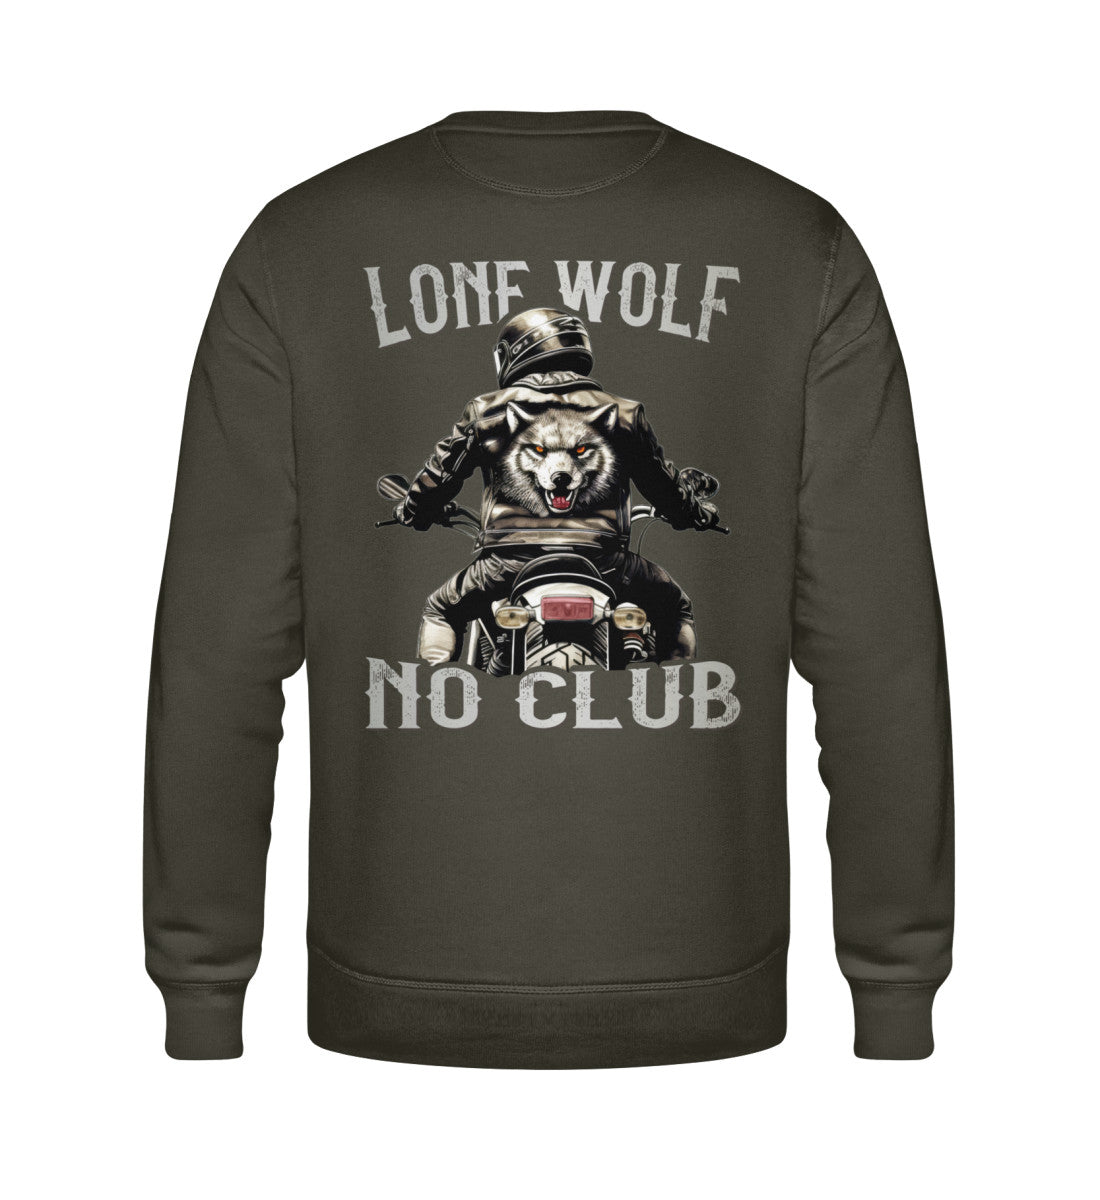 Ein Biker Sweatshirt für Motorradfahrer von Wingbikers mit dem Aufdruck, Lone Wolf - No Club, als Back Print, in khaki grün.